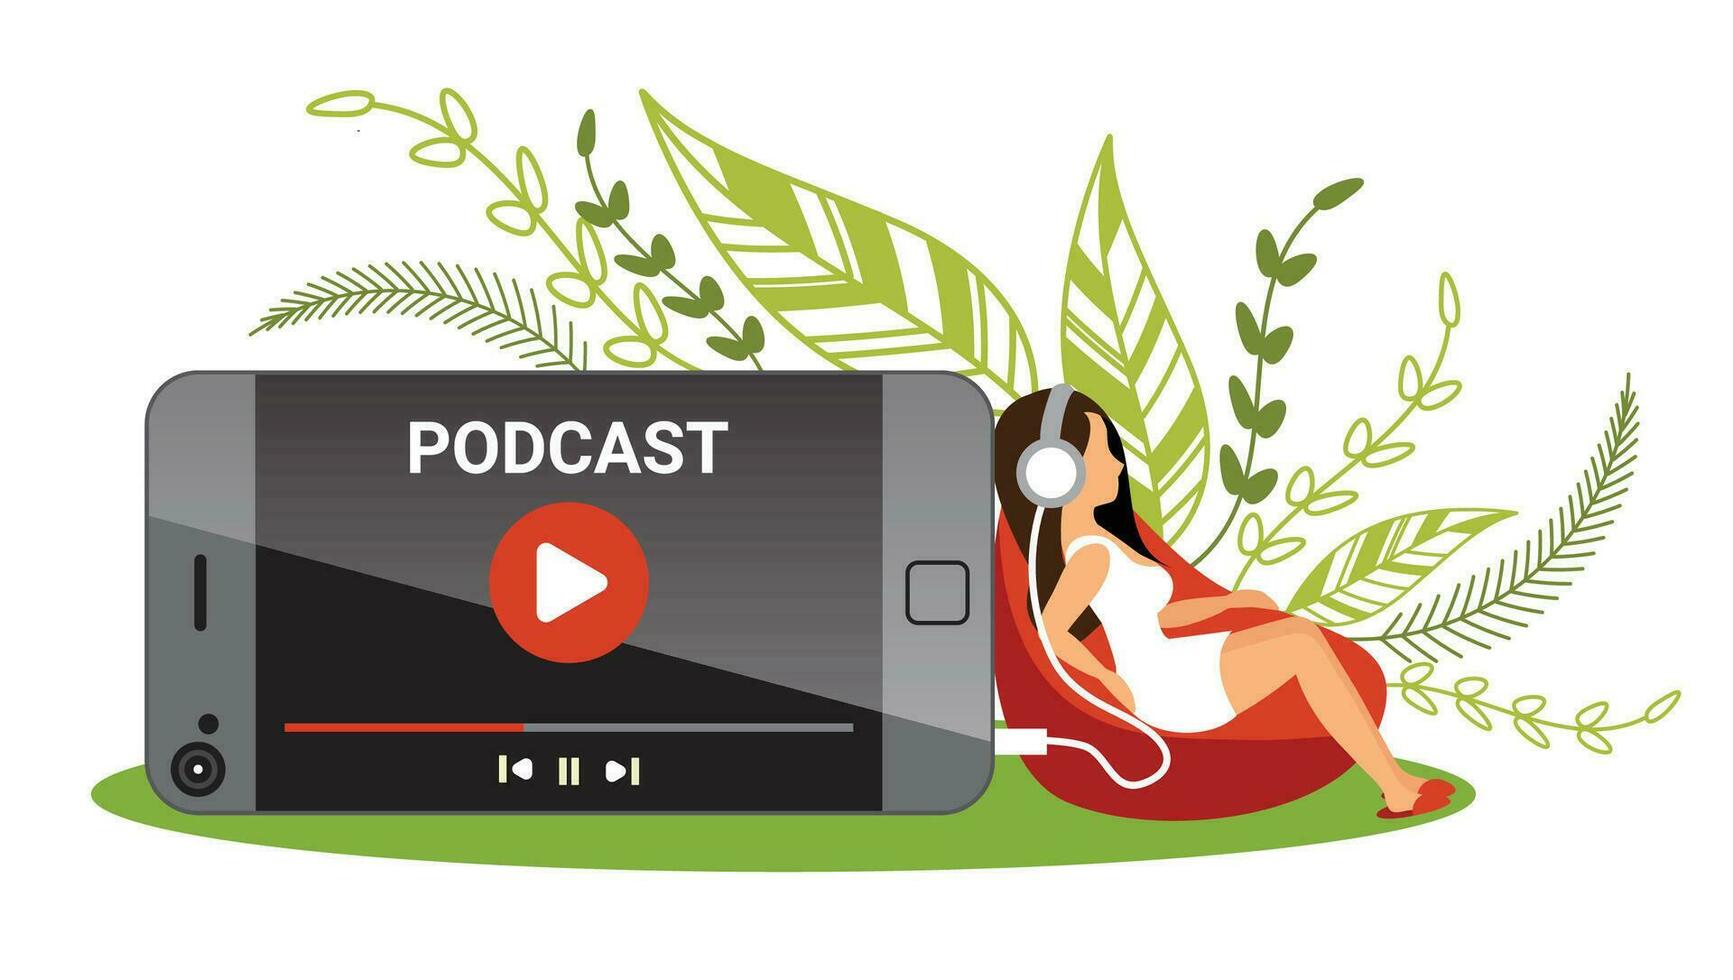 vrouw luisteren naar podcasting voor podcast concept vector